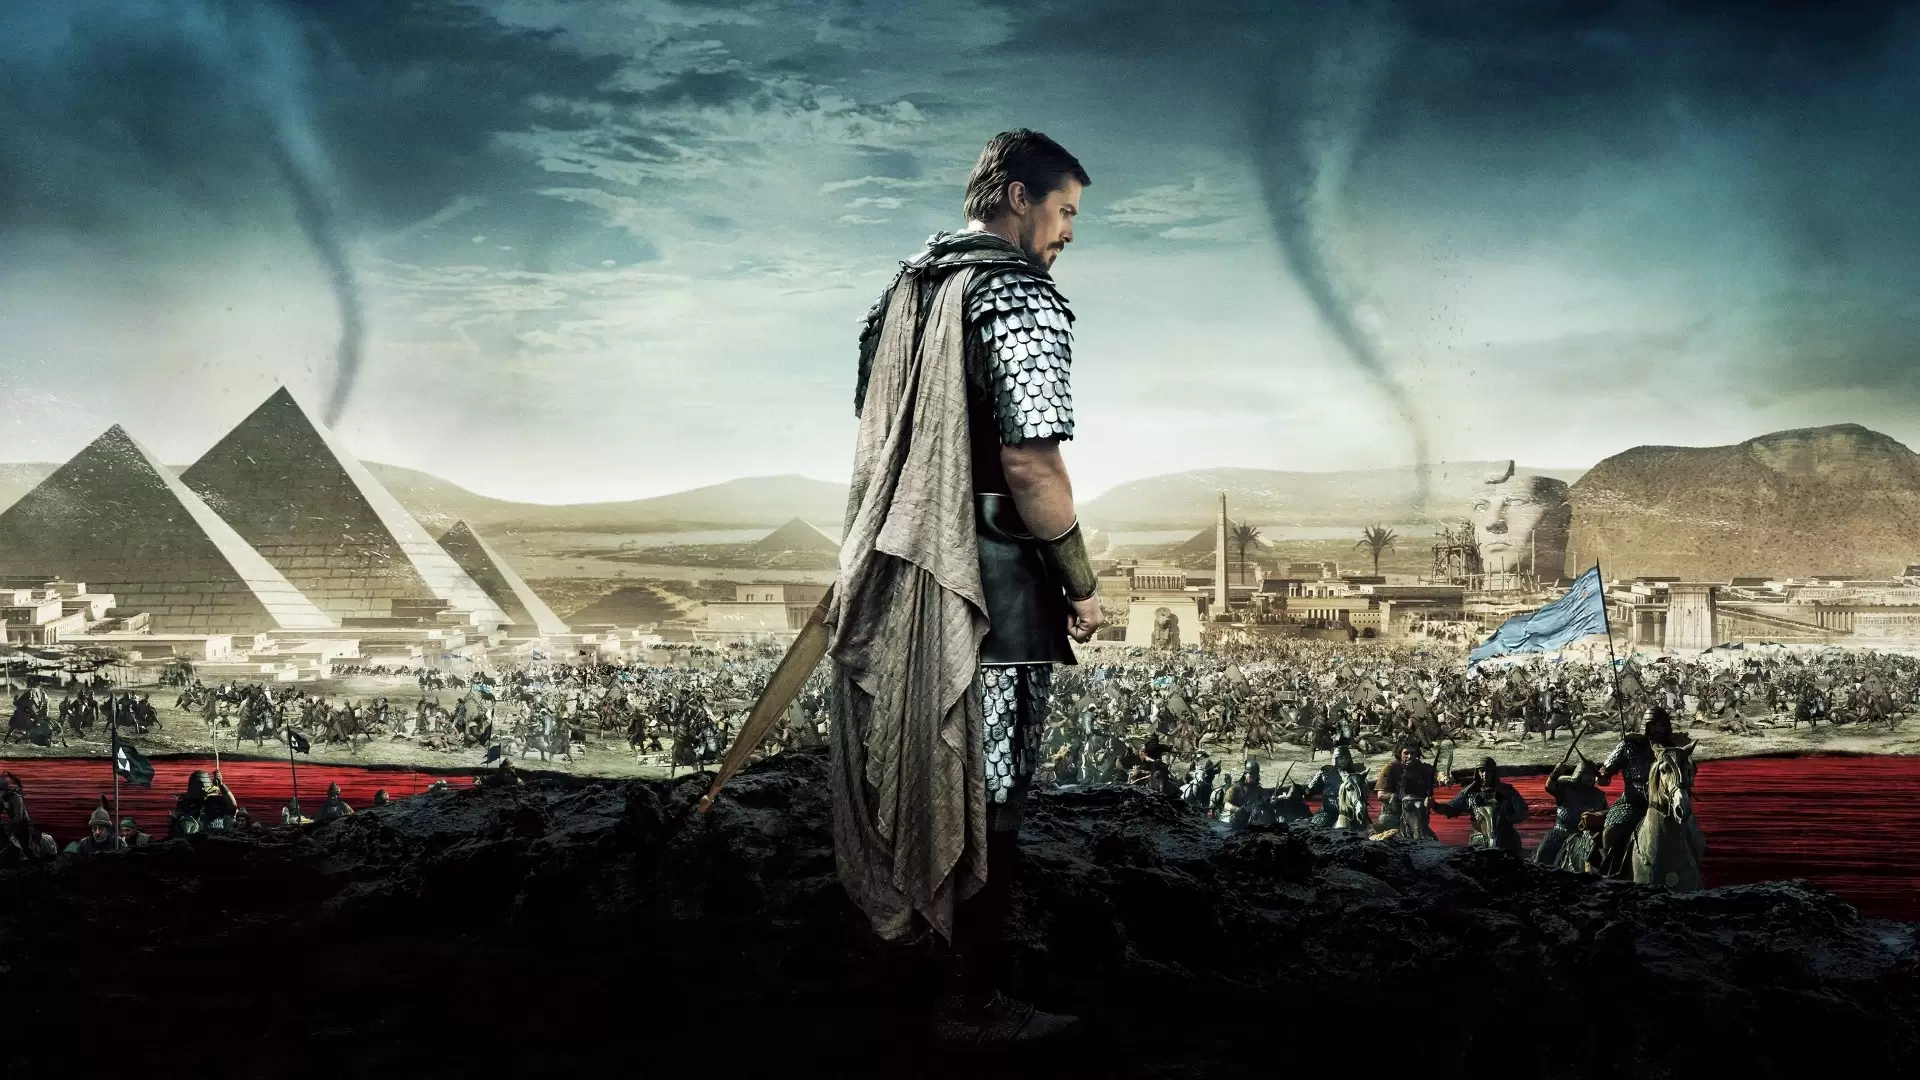 دانلود فیلم Exodus: Gods and Kings 2014 (خروج: خدایان و پادشاهان) با زیرنویس فارسی و تماشای آنلاین